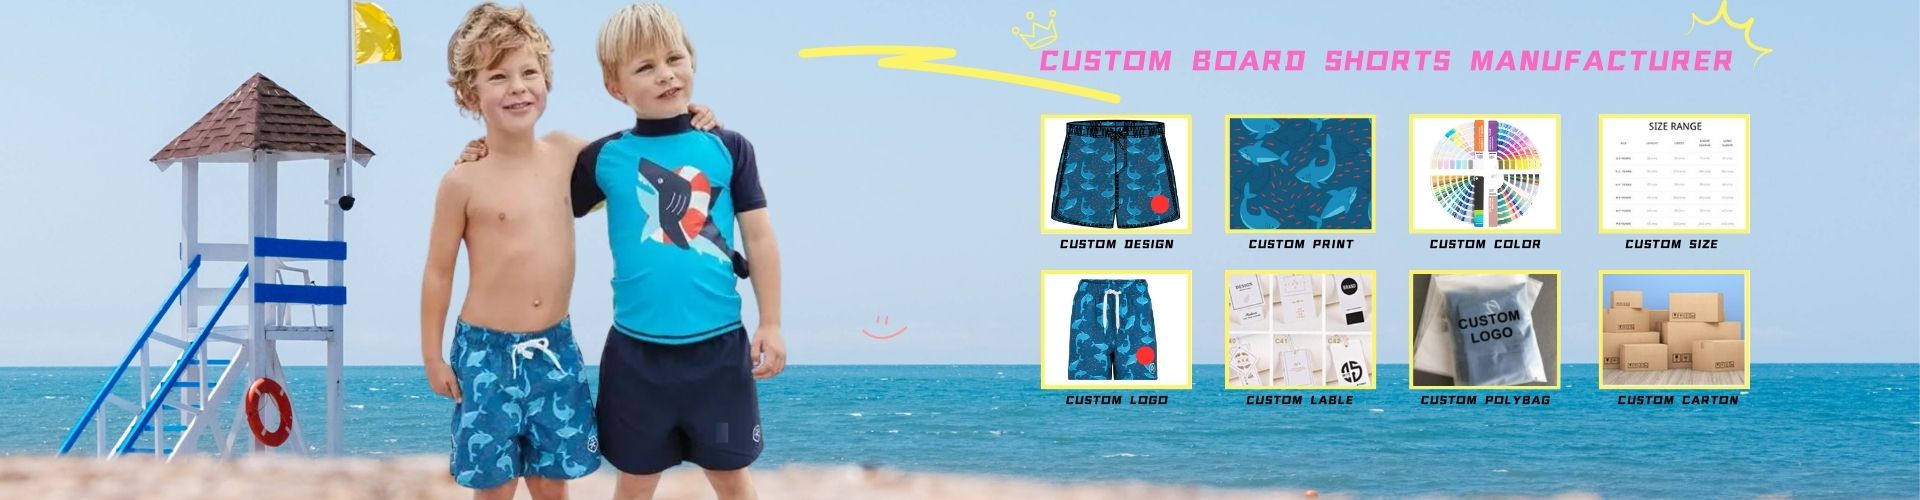 Custom Board Shorts Manufacturer